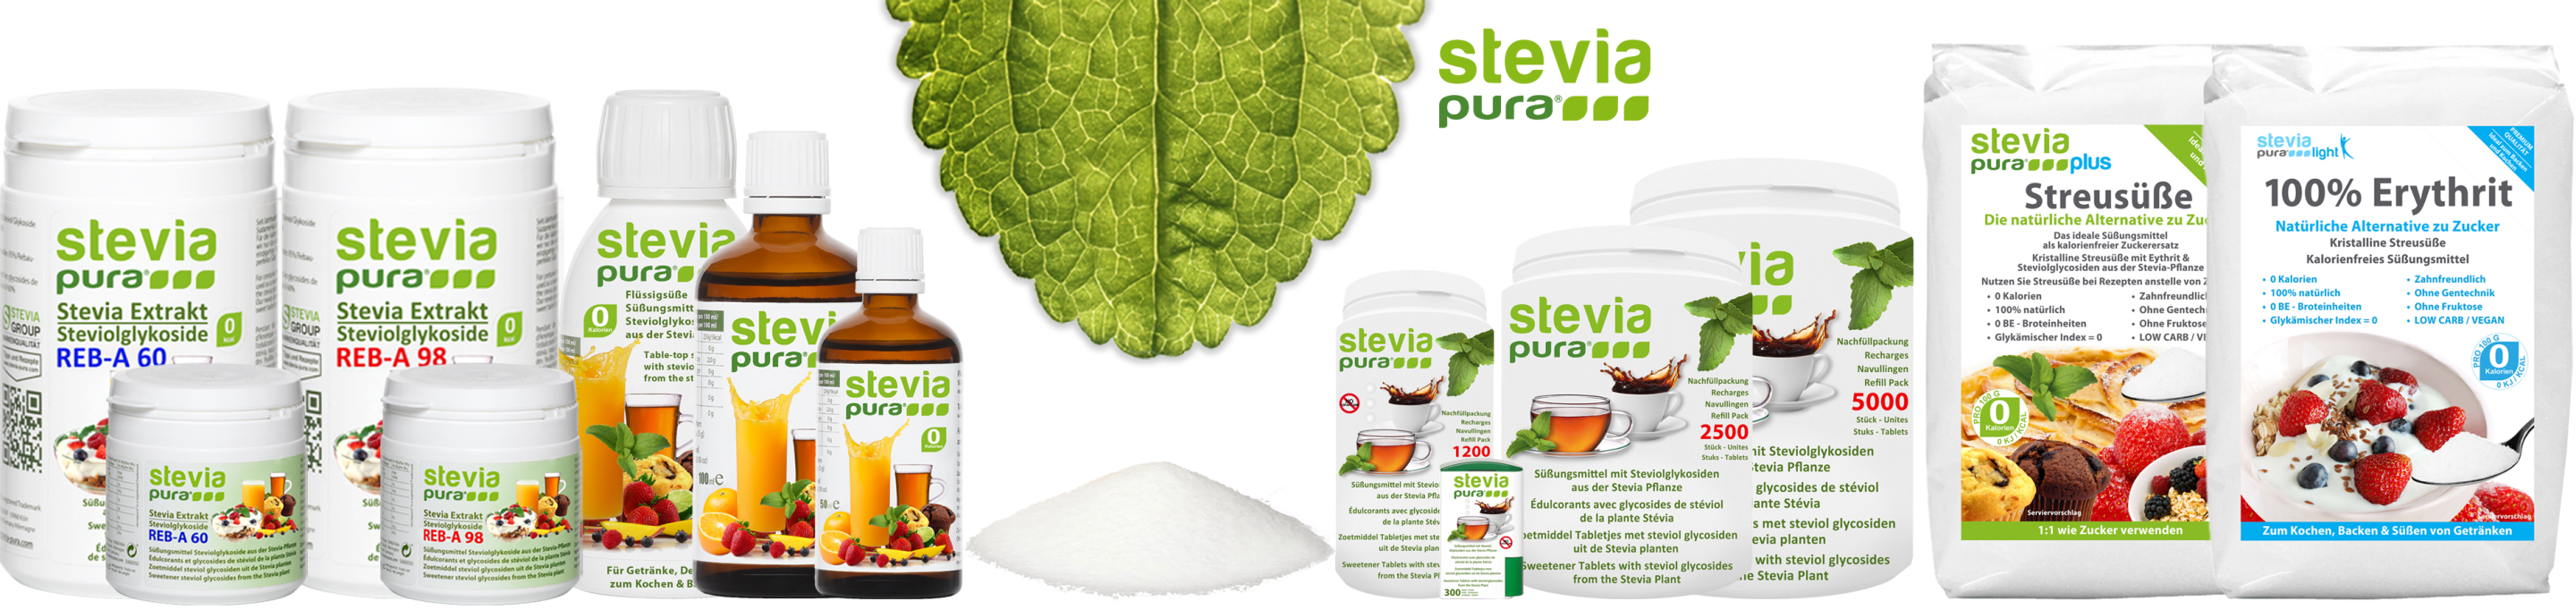 steviapura - La marca de edulcorantes de stevia de alta...